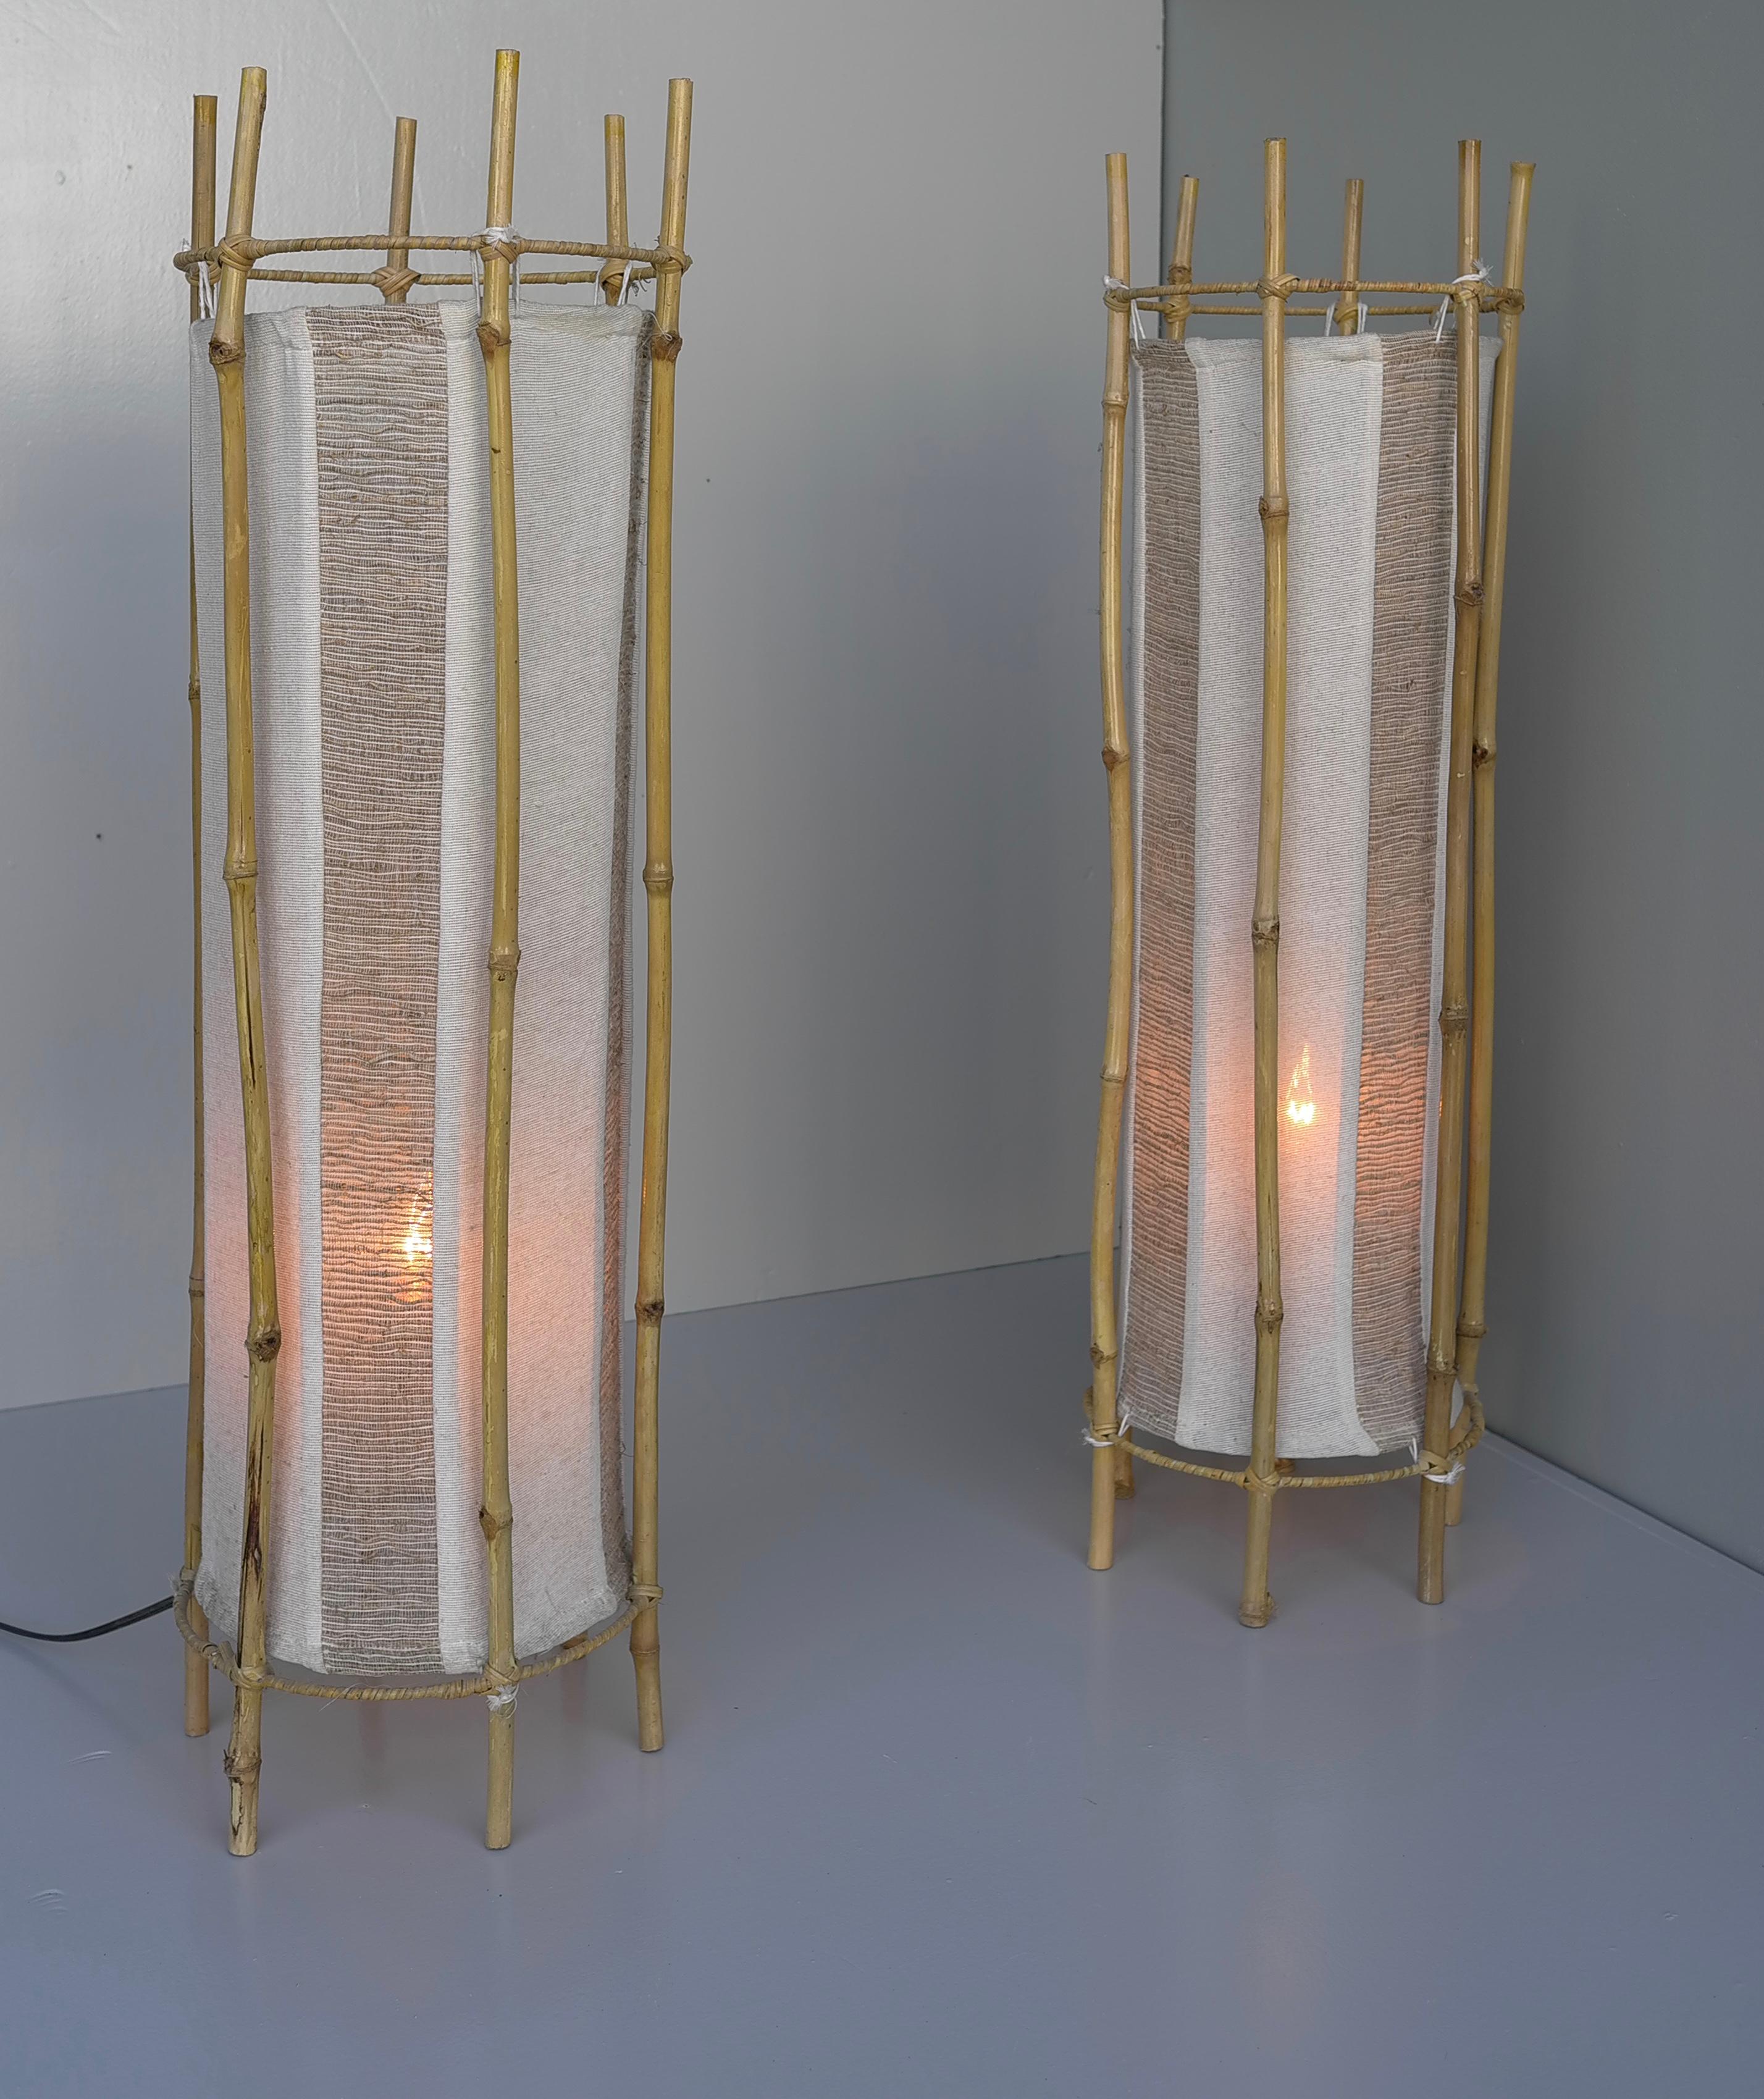 Ces lampes datent de la période où Sognot s'est intéressé à des matériaux plus humbles et plus abordables en réponse aux pénuries de matériaux après la Seconde Guerre mondiale. Fabriquée à la main à partir de six bâtons de bambou entourant une toile